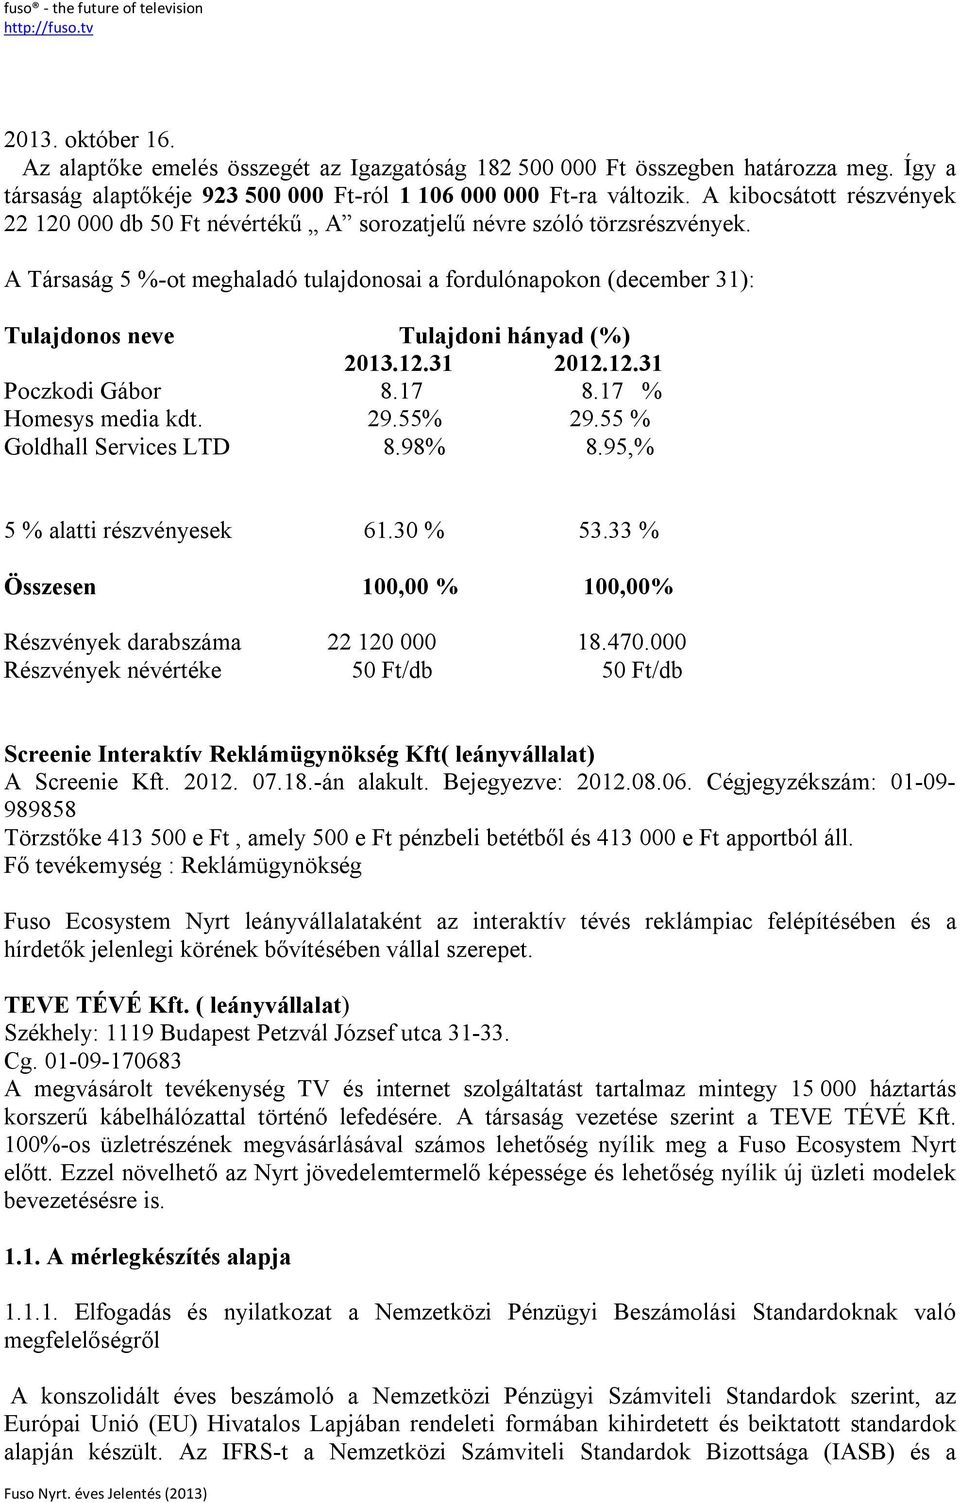 A Társaság 5 %-ot meghaladó tulajdonosai a fordulónapokon (december 31): Tulajdonos neve Tulajdoni hányad (%) 2013.12.31 2012.12.31 Poczkodi Gábor 8.17 8.17 % Homesys media kdt. 29.55% 29.